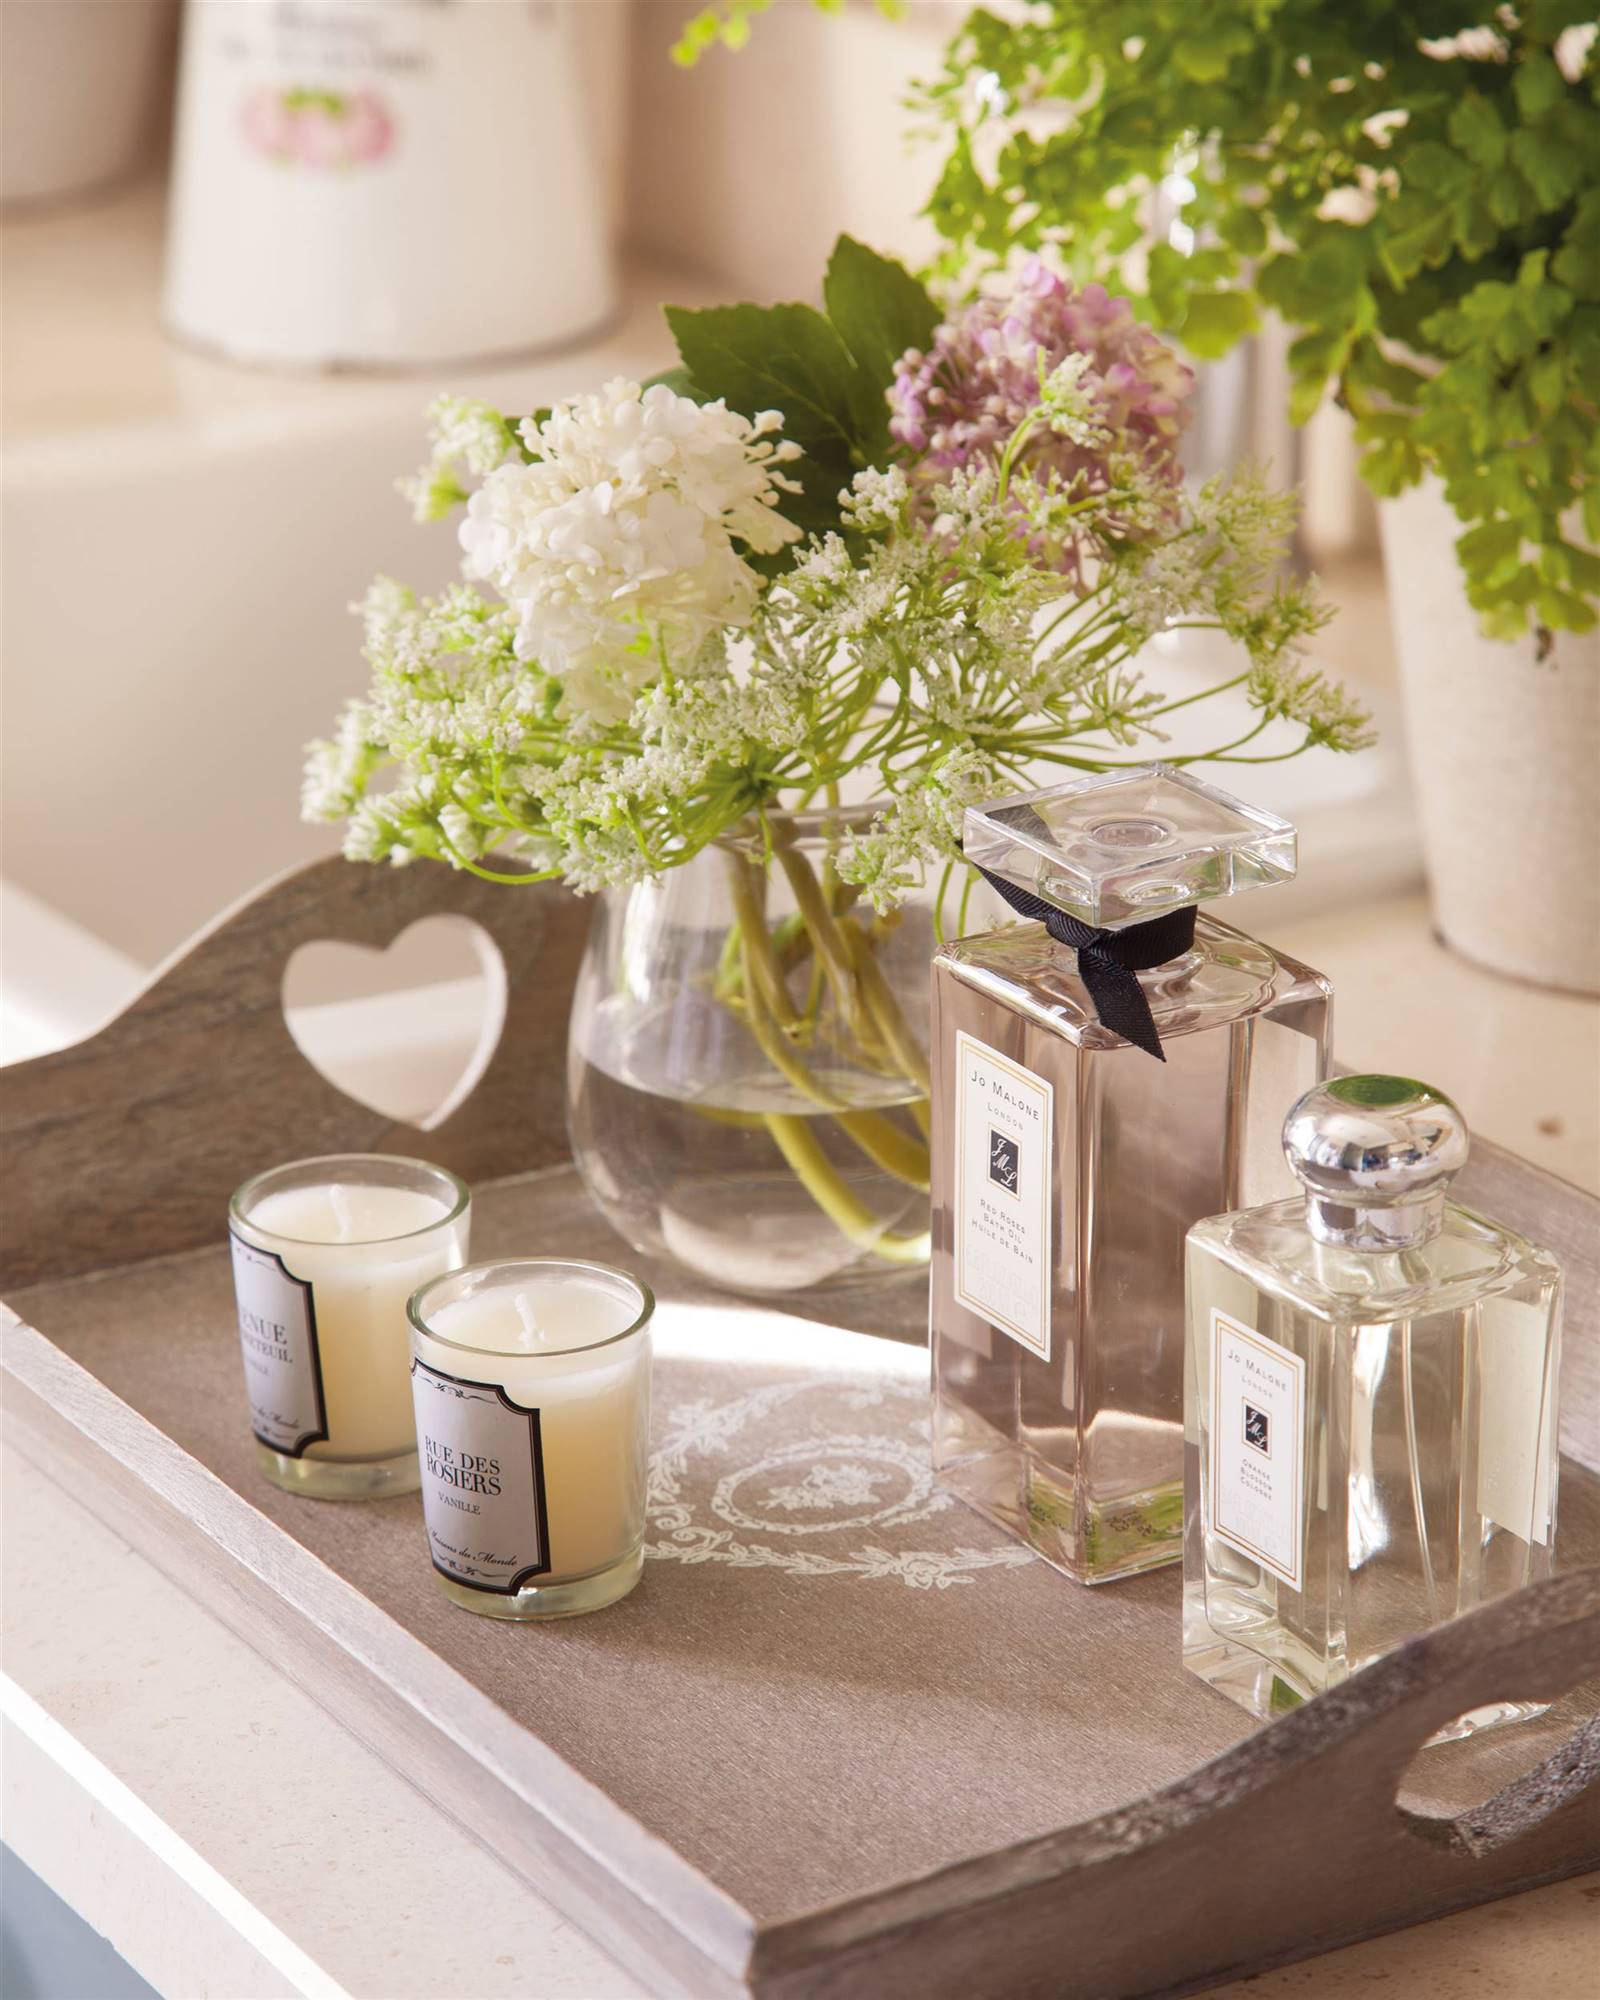 Perfumes, velas y un jarrón con flores sobre una bandeja en el baño